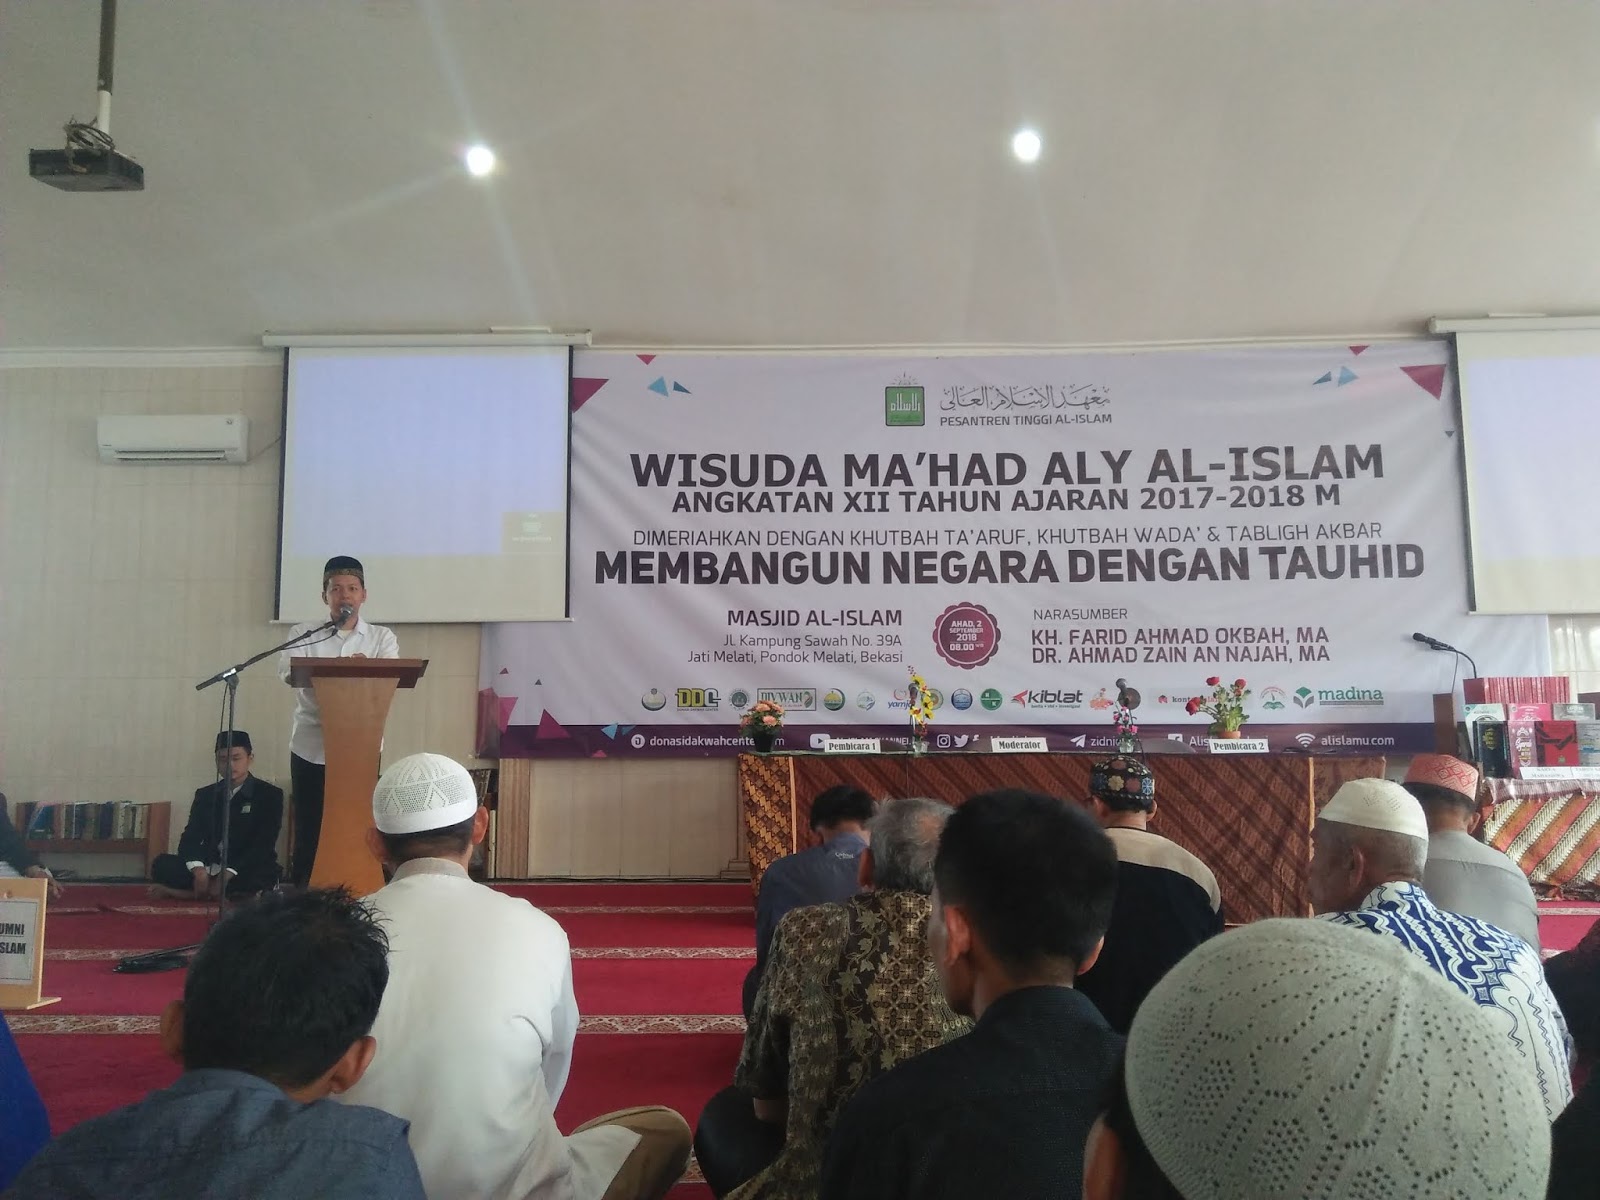 Center Bekasi Juga menyelengarakan acara kajian Tablig Akhbar bersama ketua Yayasan Islamic Center Ustadz Farid Ahmad Okbah Lc sebagai pembicara